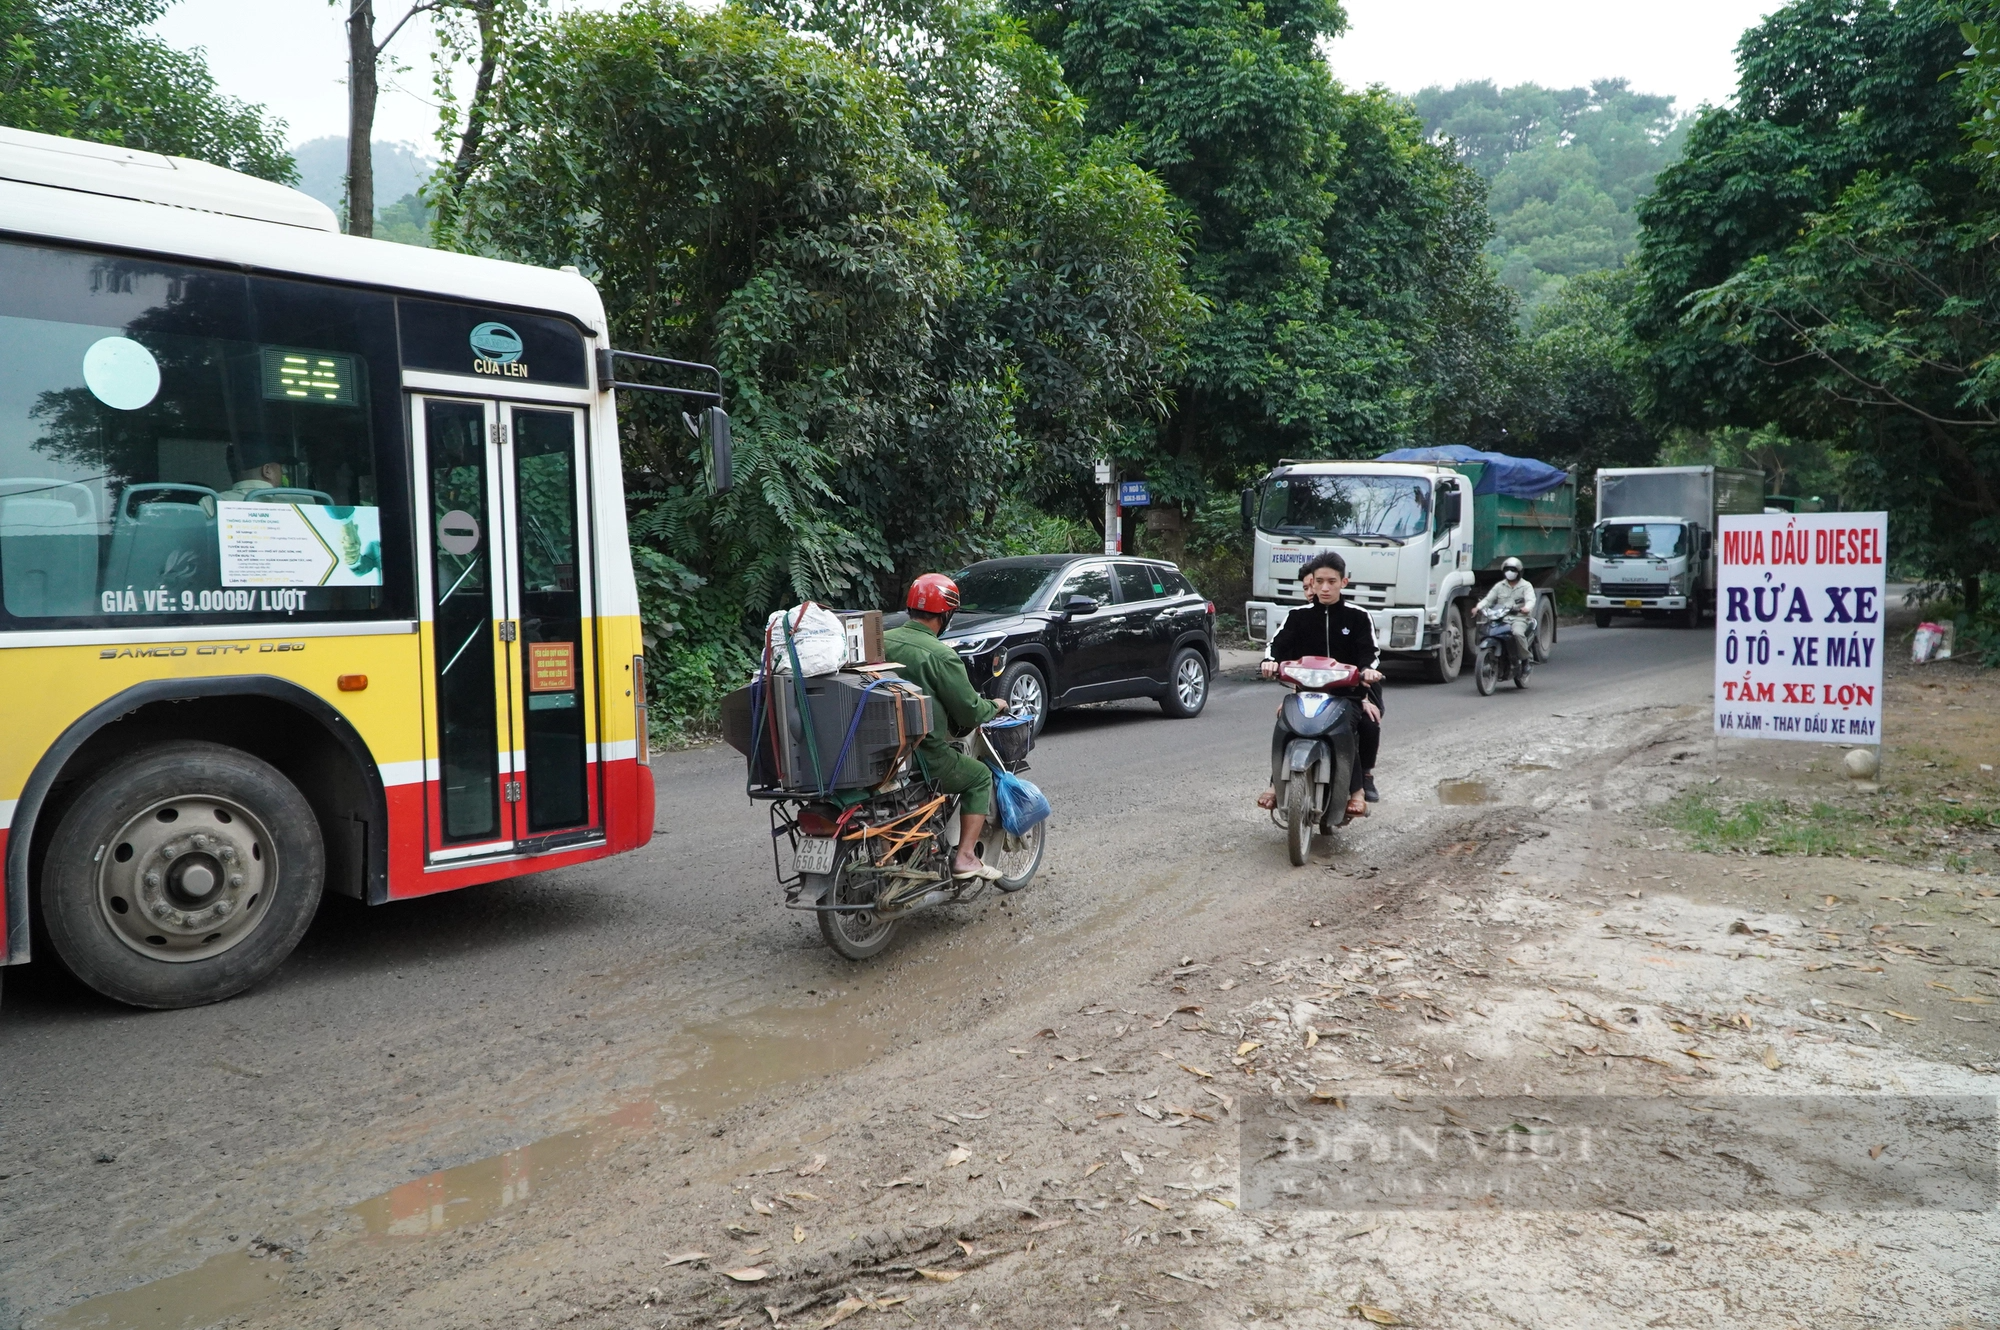 Tỉnh lộ 35 xuống cấp nghiêm trọng trên địa bàn huyện Sóc Sơn (Hà Nội) - Ảnh 7.